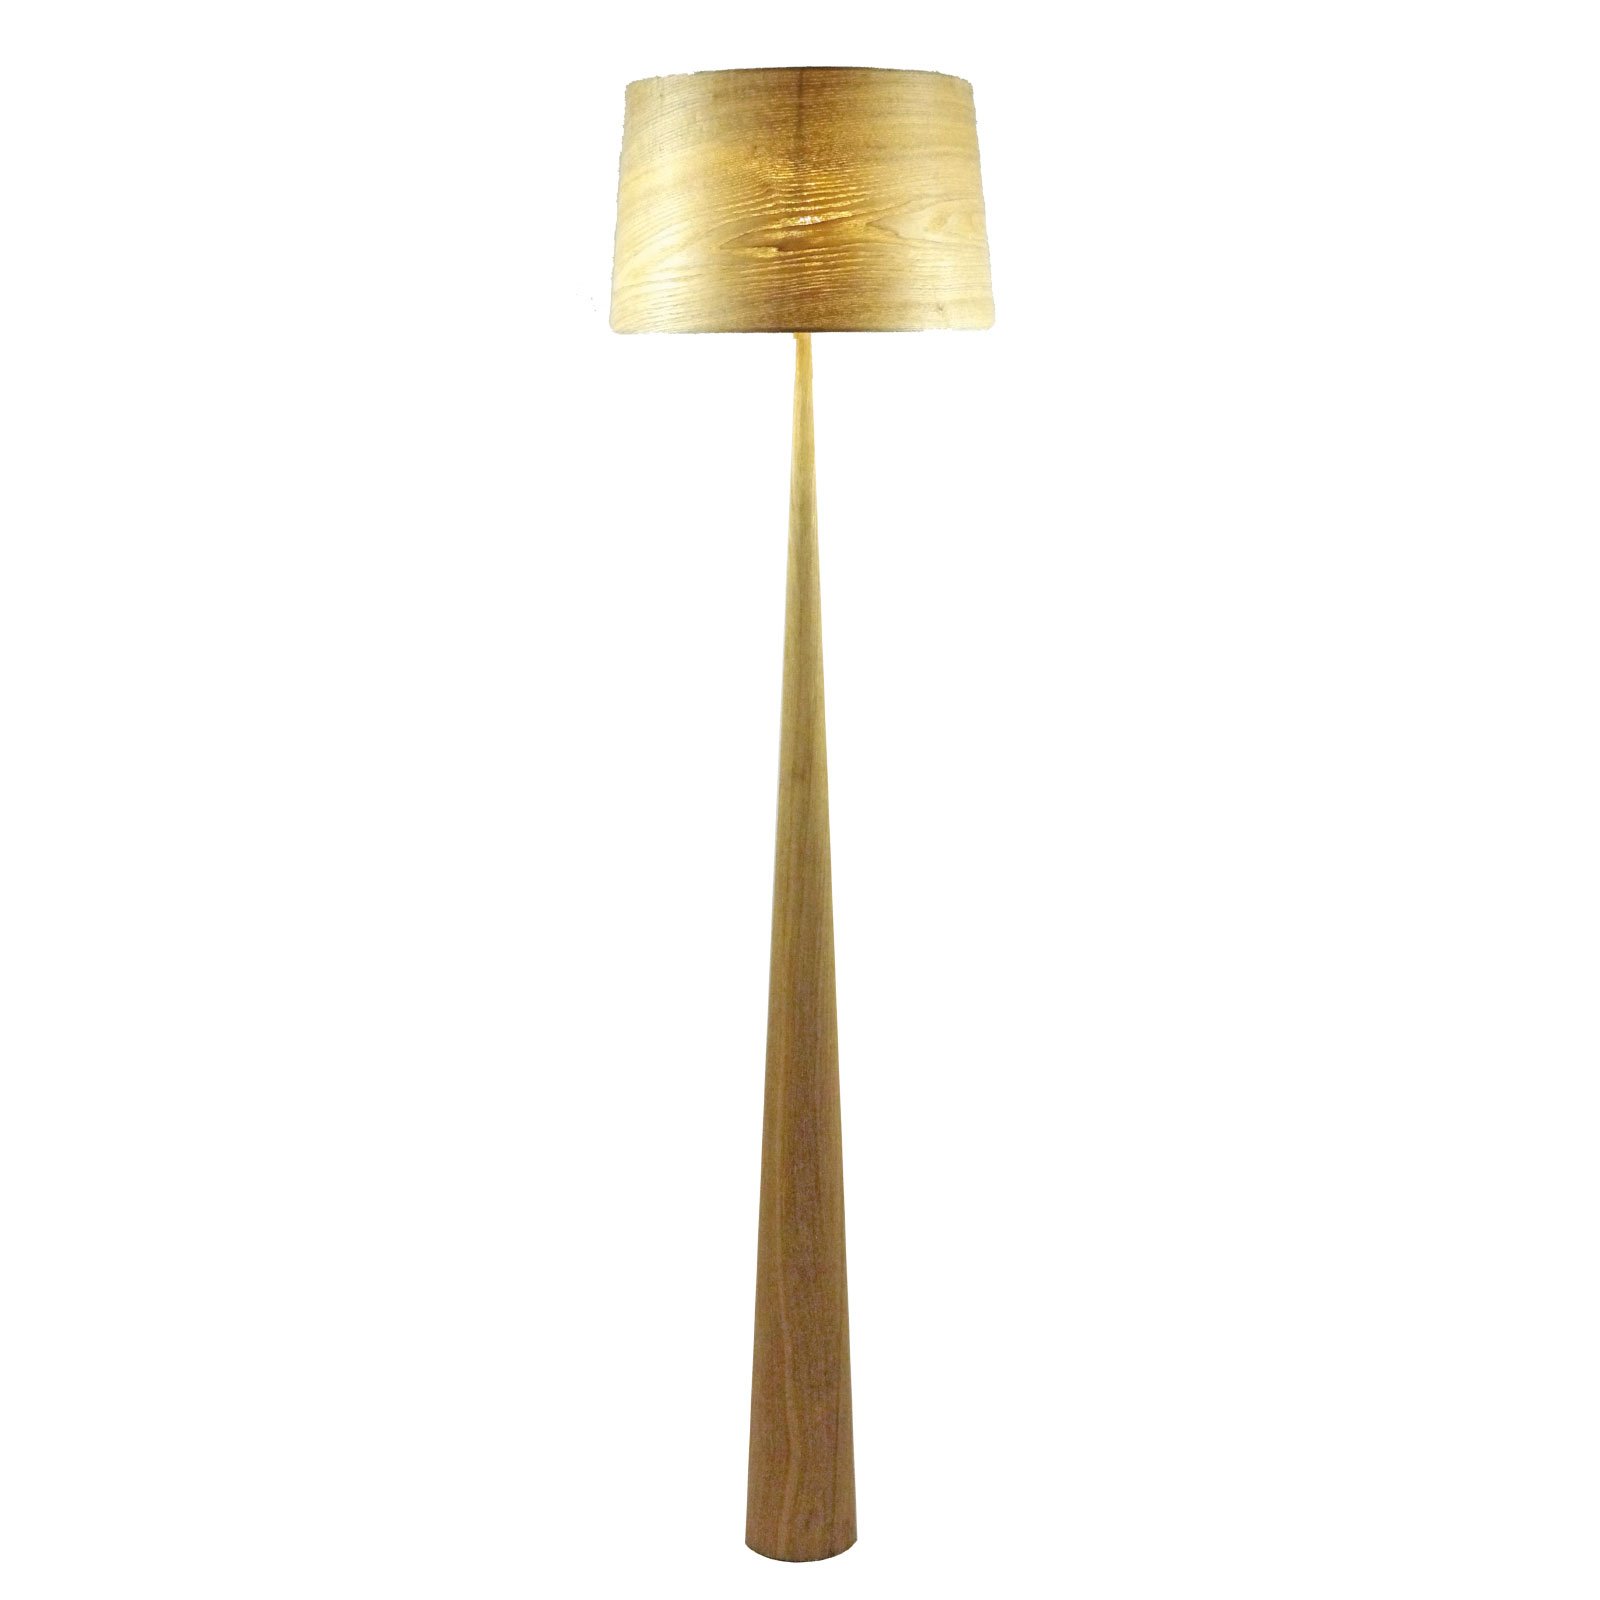 Lampa podłogowa Totem LS z metalu, fornir z drewna